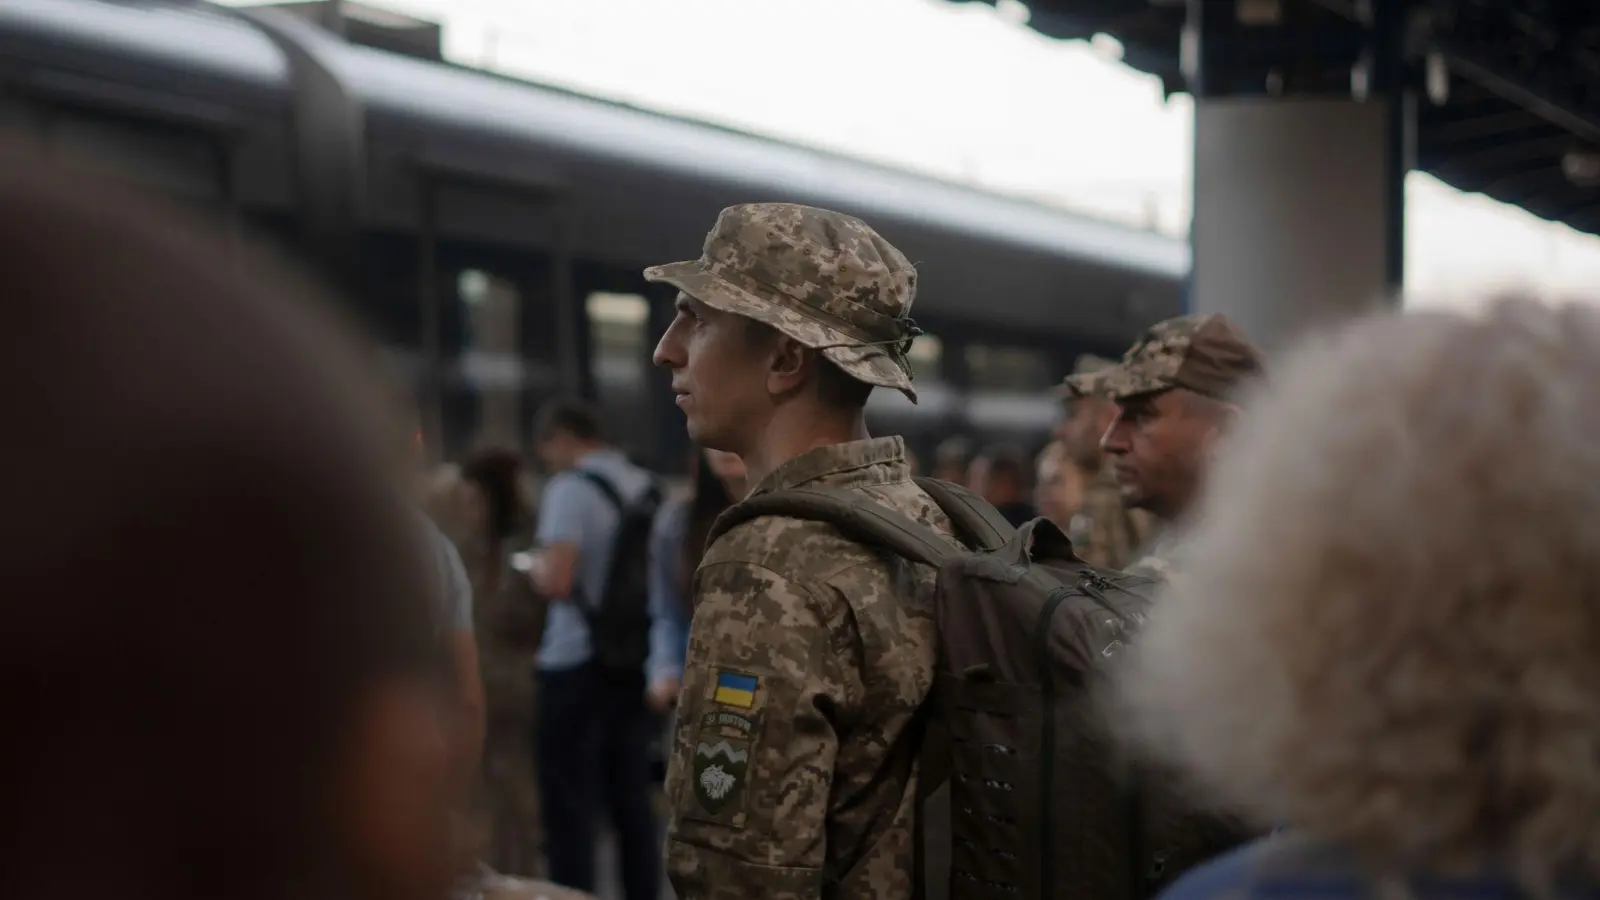 Ein ukrainischer Soldat wartet am Bahnhof in Kiew auf einen Zug in Richtung der Frontgebiete. (Foto: Hanna Arhirova/AP)